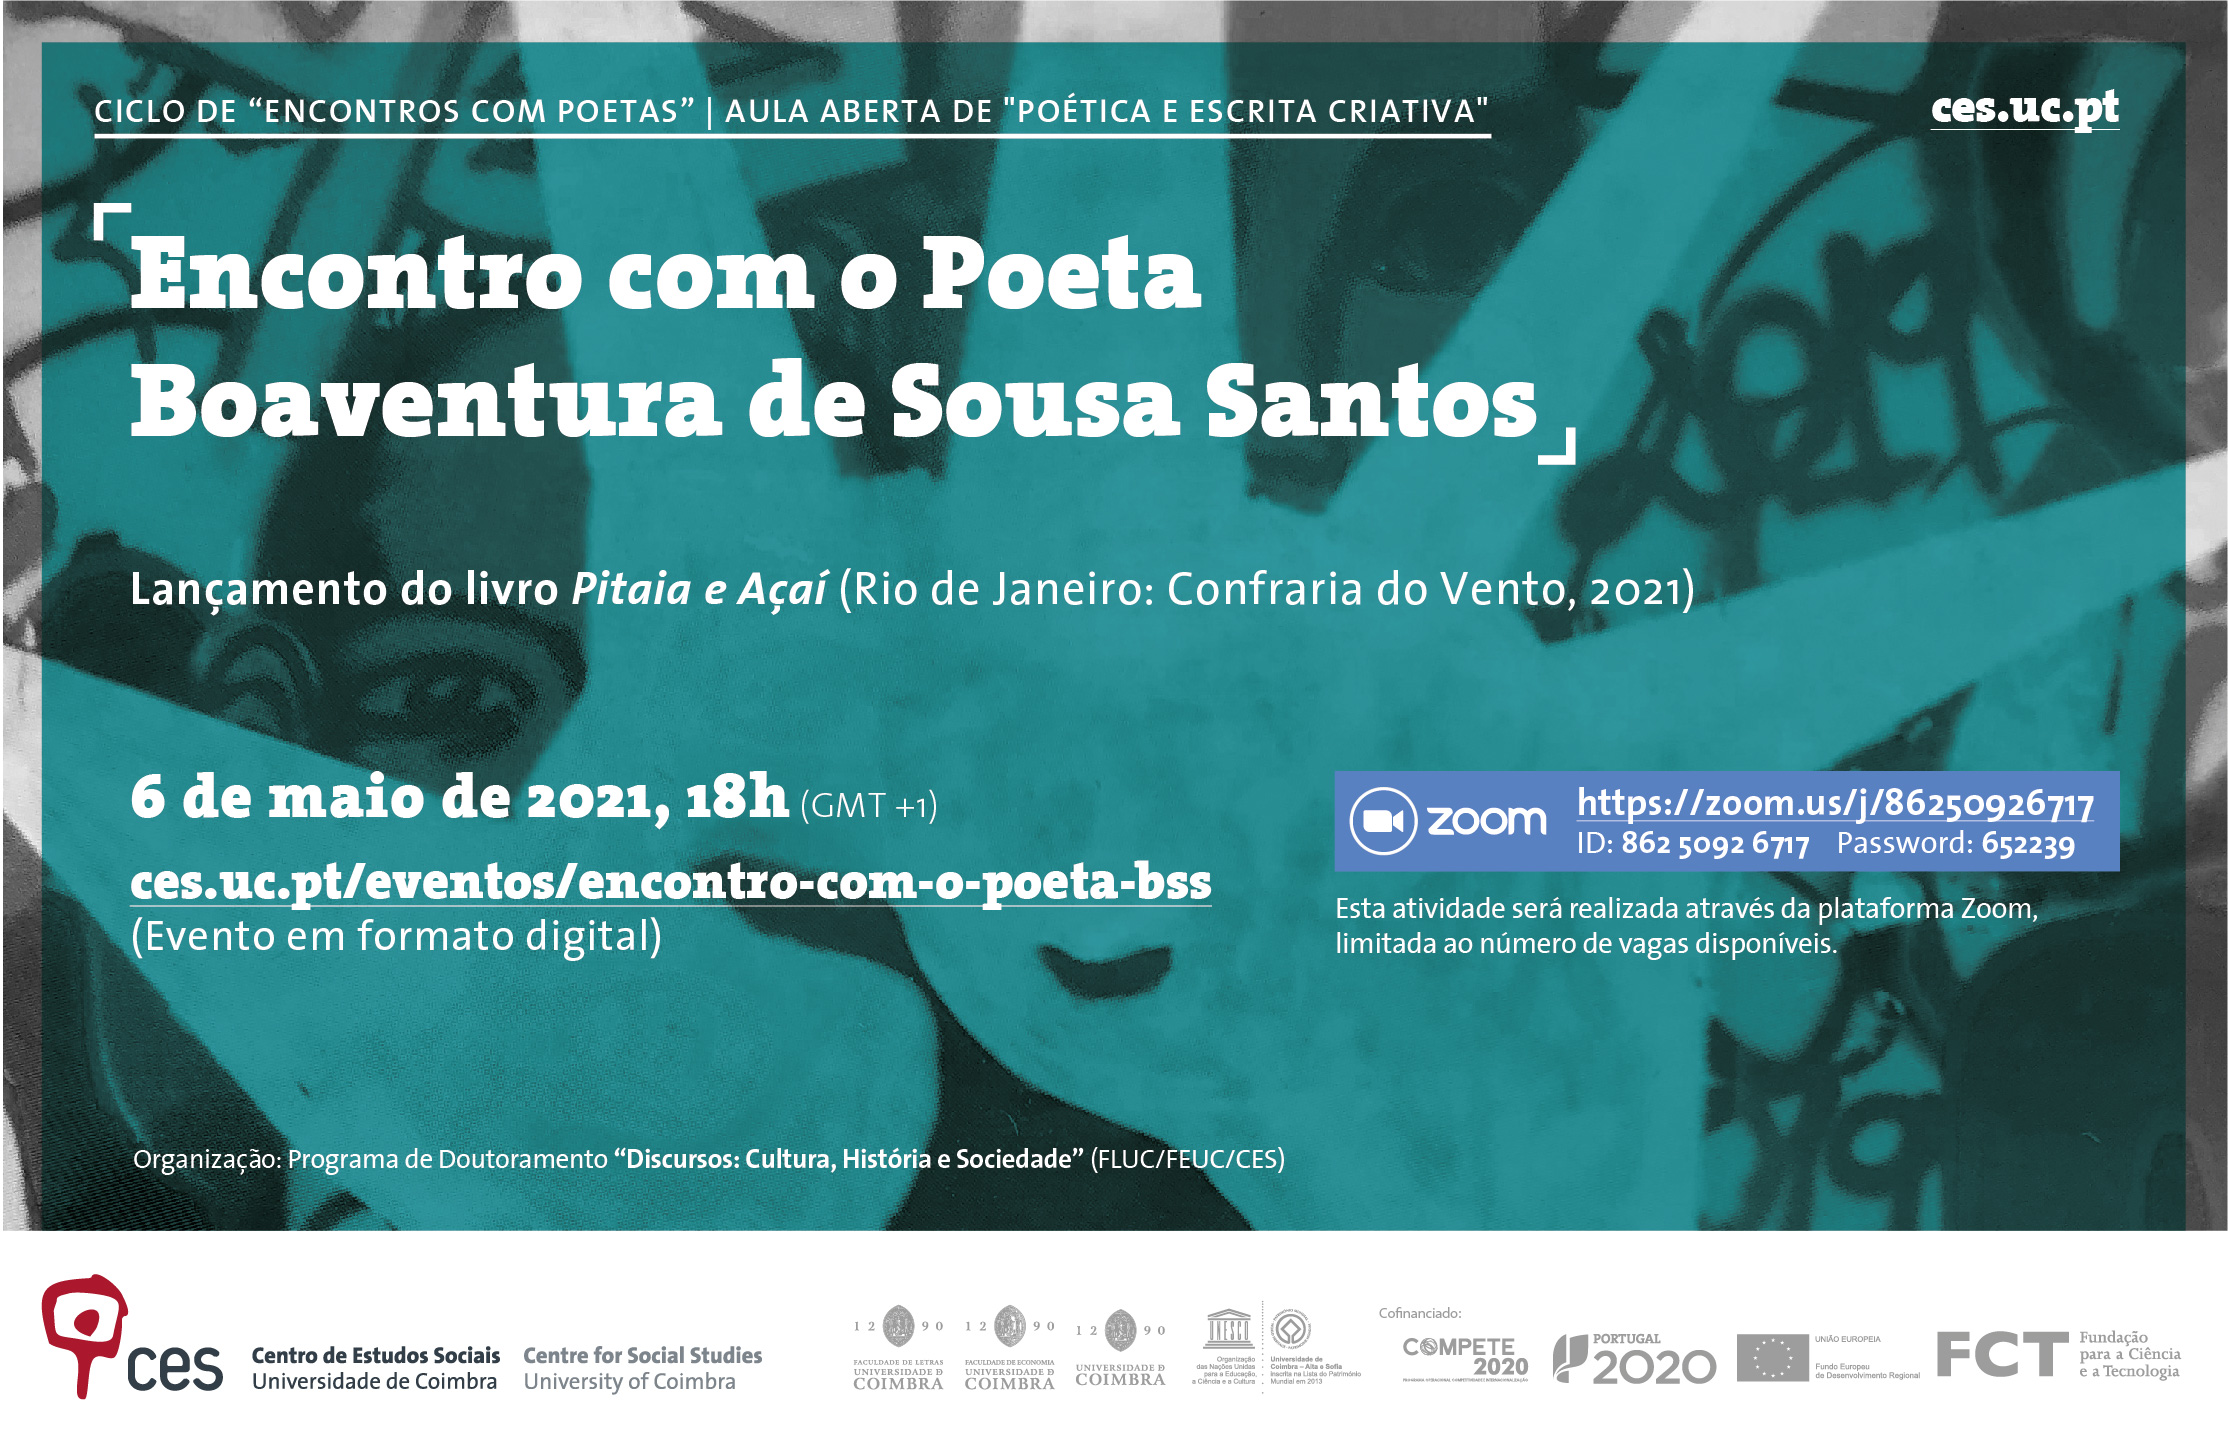 Meeting with the Poet Boaventura de Sousa Santos<span id="edit_34072"><script>$(function() { $('#edit_34072').load( "/myces/user/editobj.php?tipo=evento&id=34072" ); });</script></span>